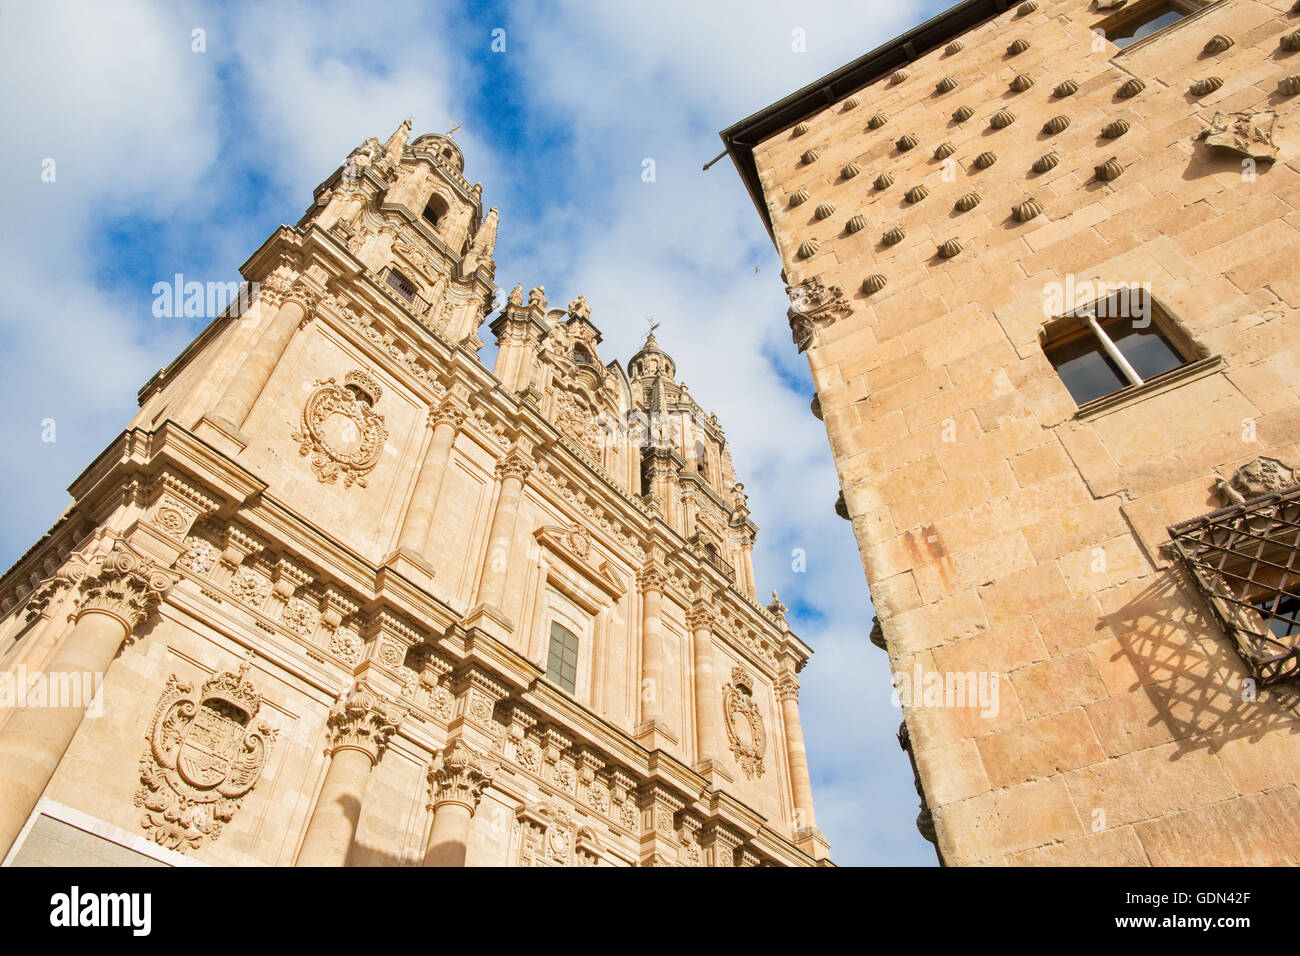 SALAMANCA, Spagna, aprile - 17, 2016: il portale barocco La Clerecia - Pontificia Università. Foto Stock